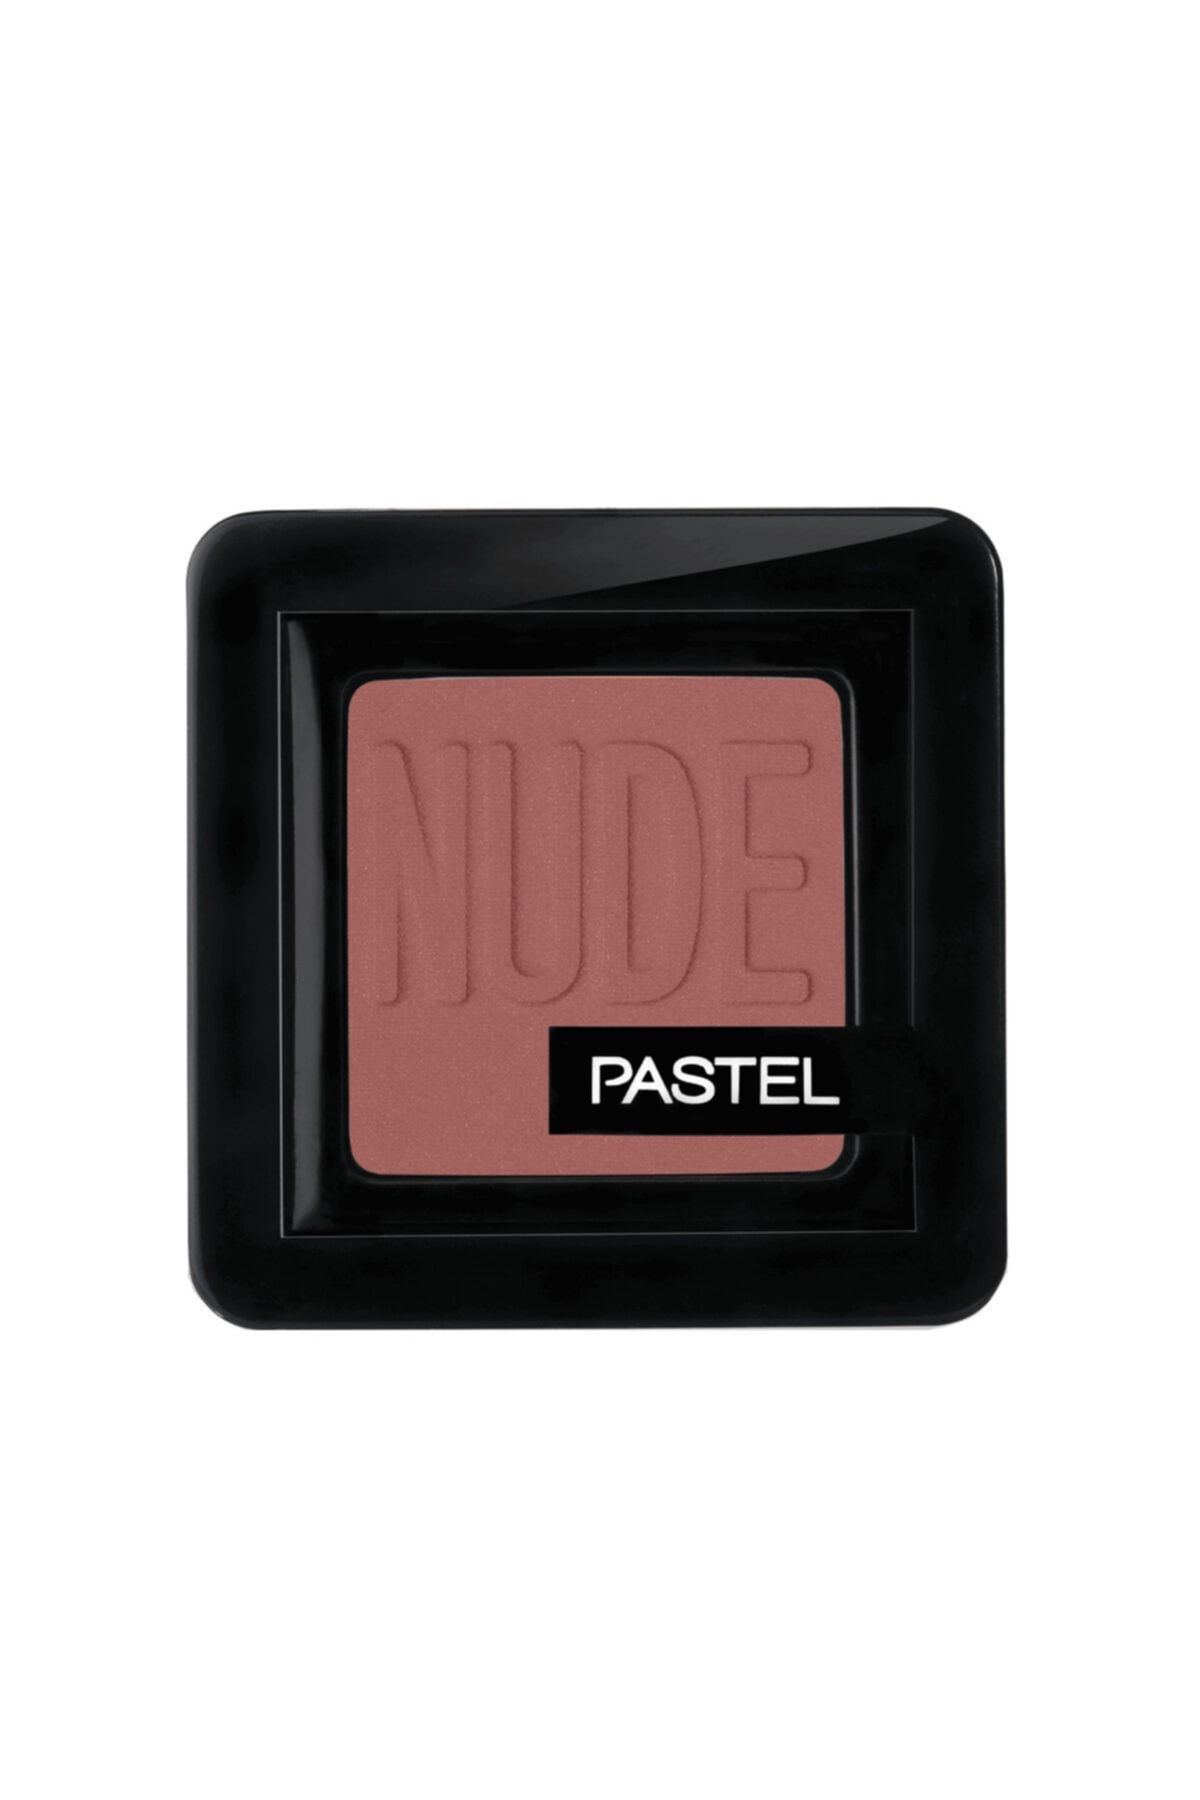 Pastel Profashion Nude Single Far no: 90